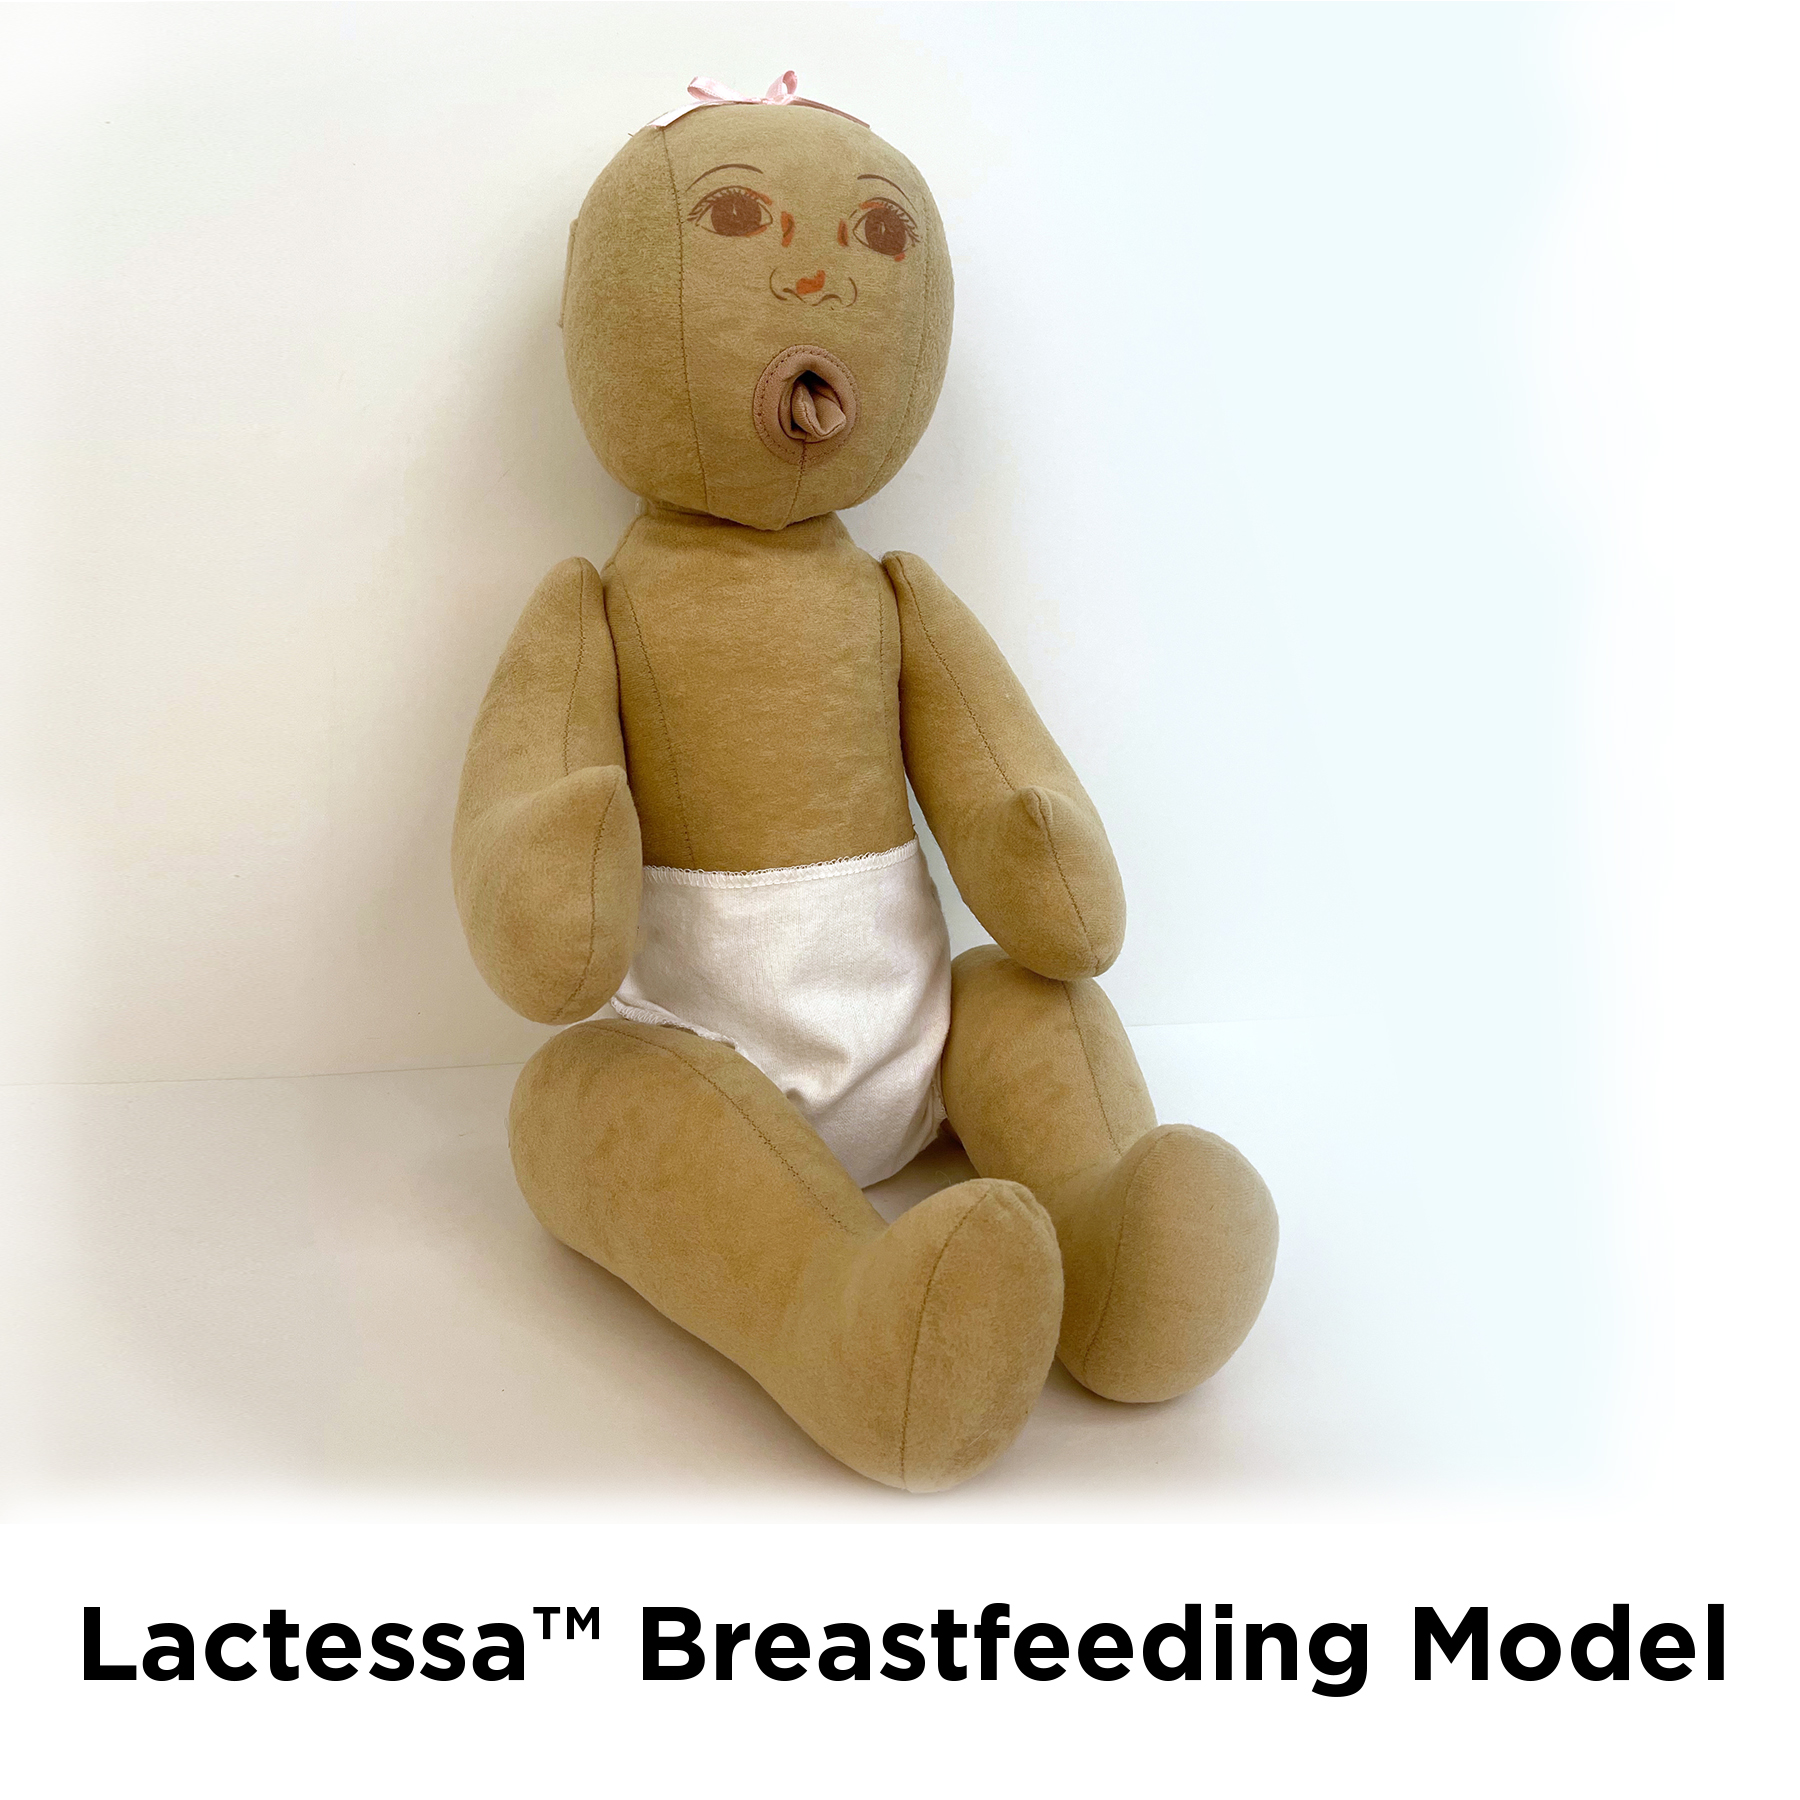 Lactessa Breastfeeding Model for lactation education and breastfeeding education, Childbirth Graphics, 79800